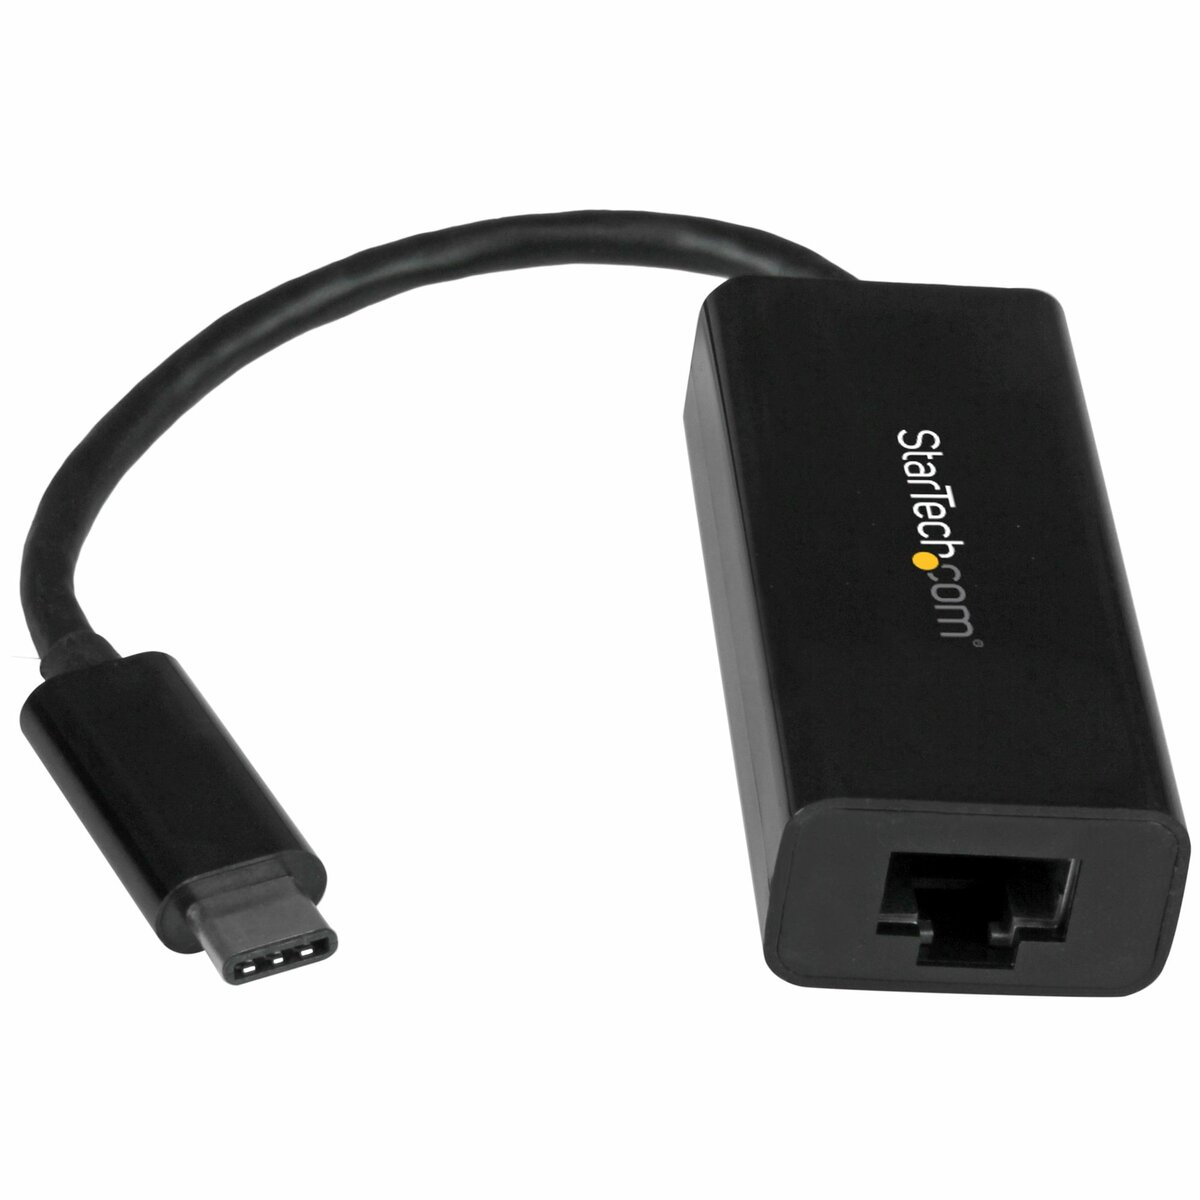 Rodet detaljeret Mindst StarTech.com USB C to Gigabit Ethernet Adapter - Black - USB 3.1 to RJ45 LAN  Network Adapter - USB Type C to Ethernet (US1GC30B) - network adapter - USB- C - Gigabit Ethernet